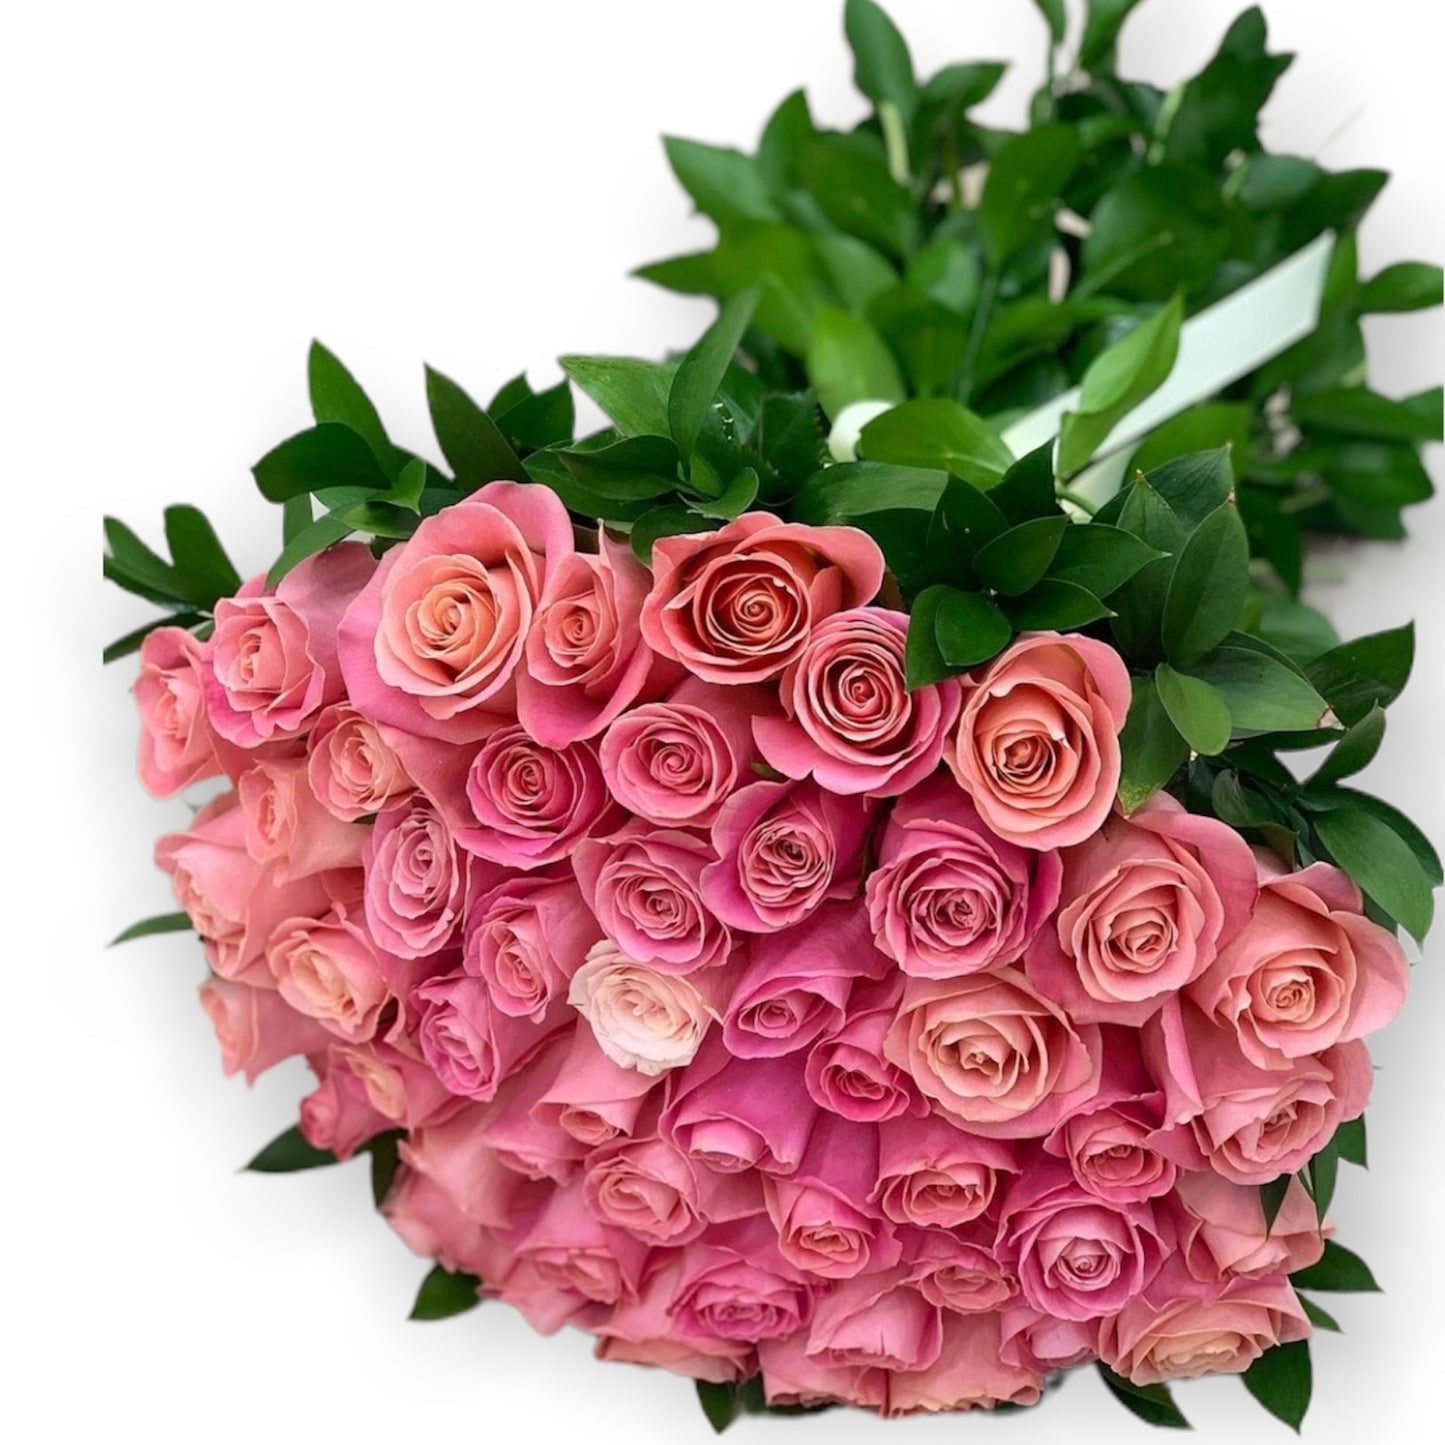 Buchet simplu cu trandafiri naturali roz